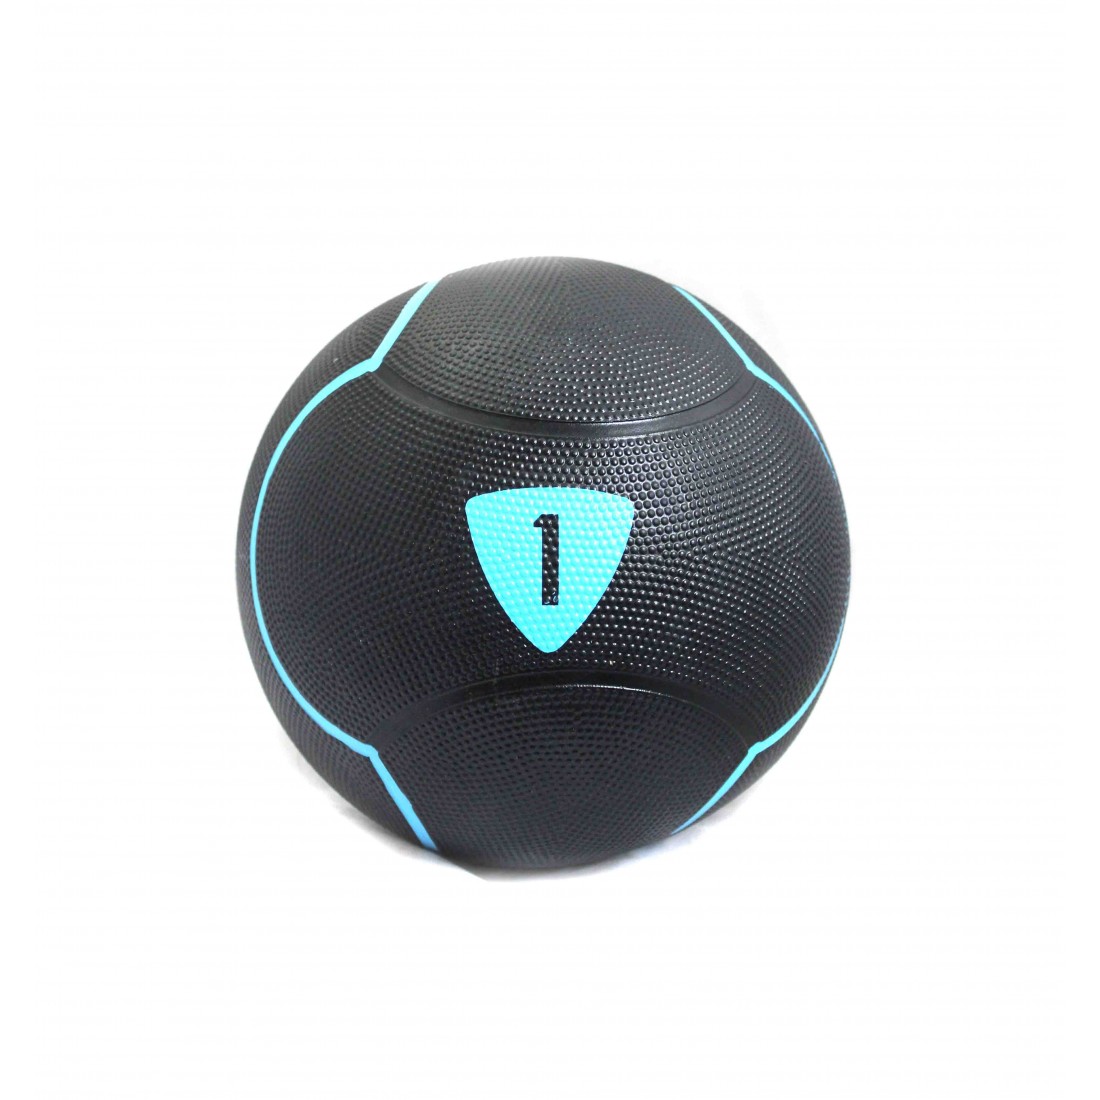 Медбол Livepro SOLID MEDICINE BALL LP8110-1 черный 1кг